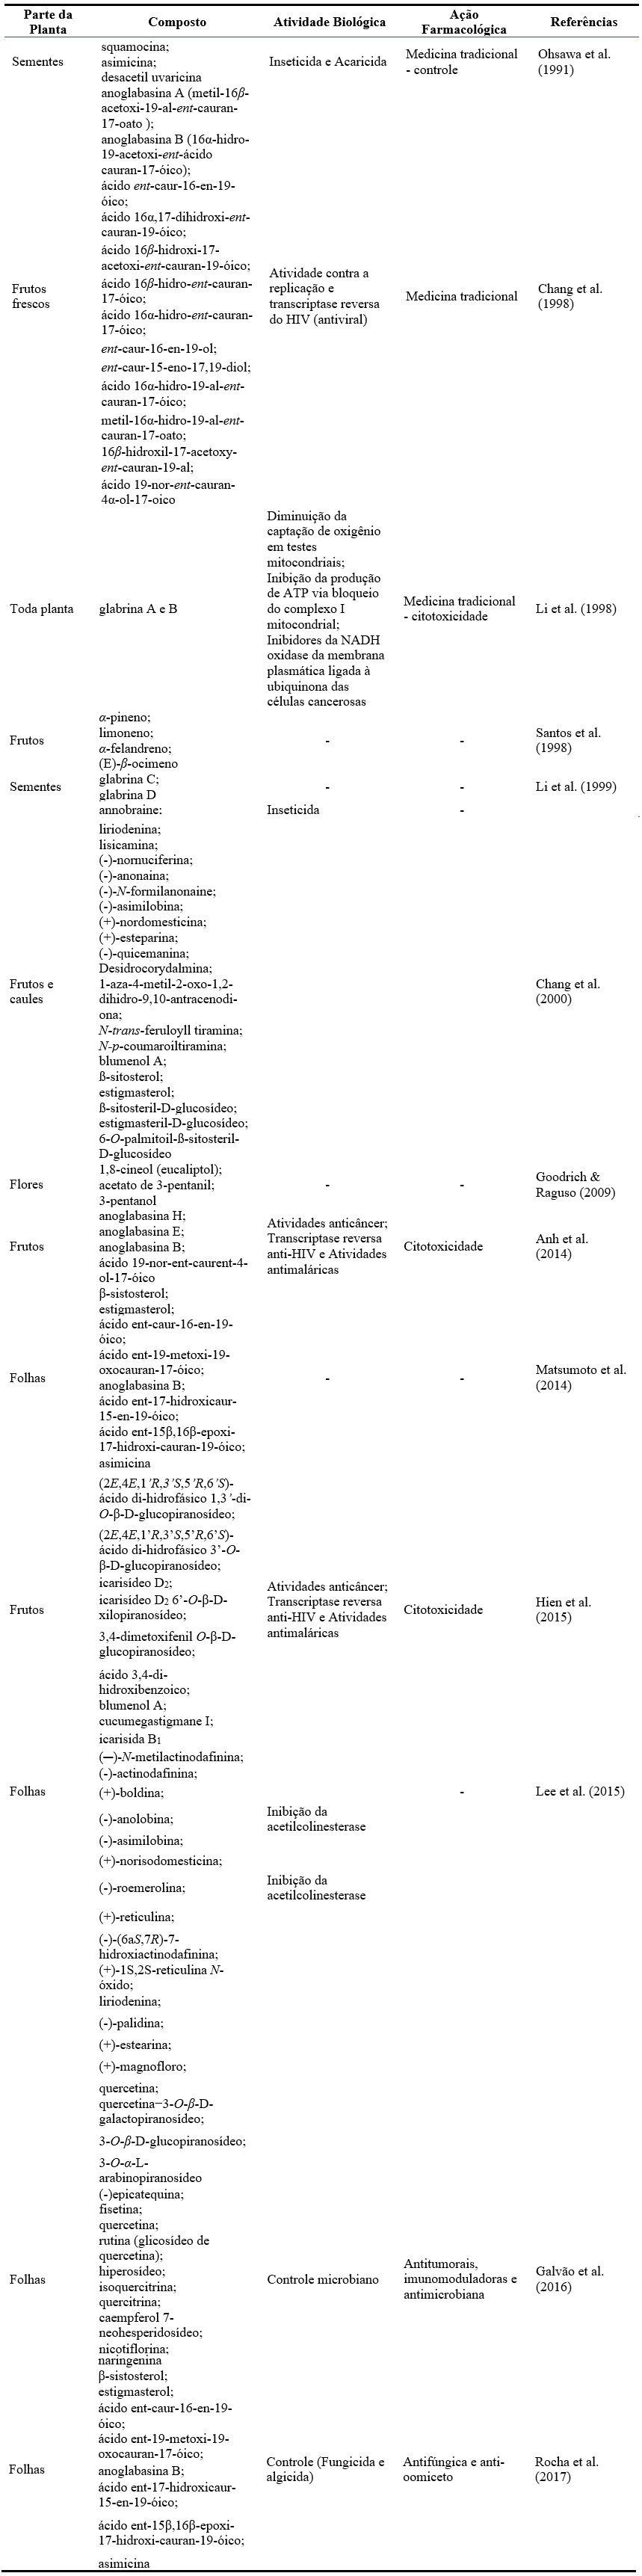 Constituintes químicos encontrados em diferentes partes de Annona glabra